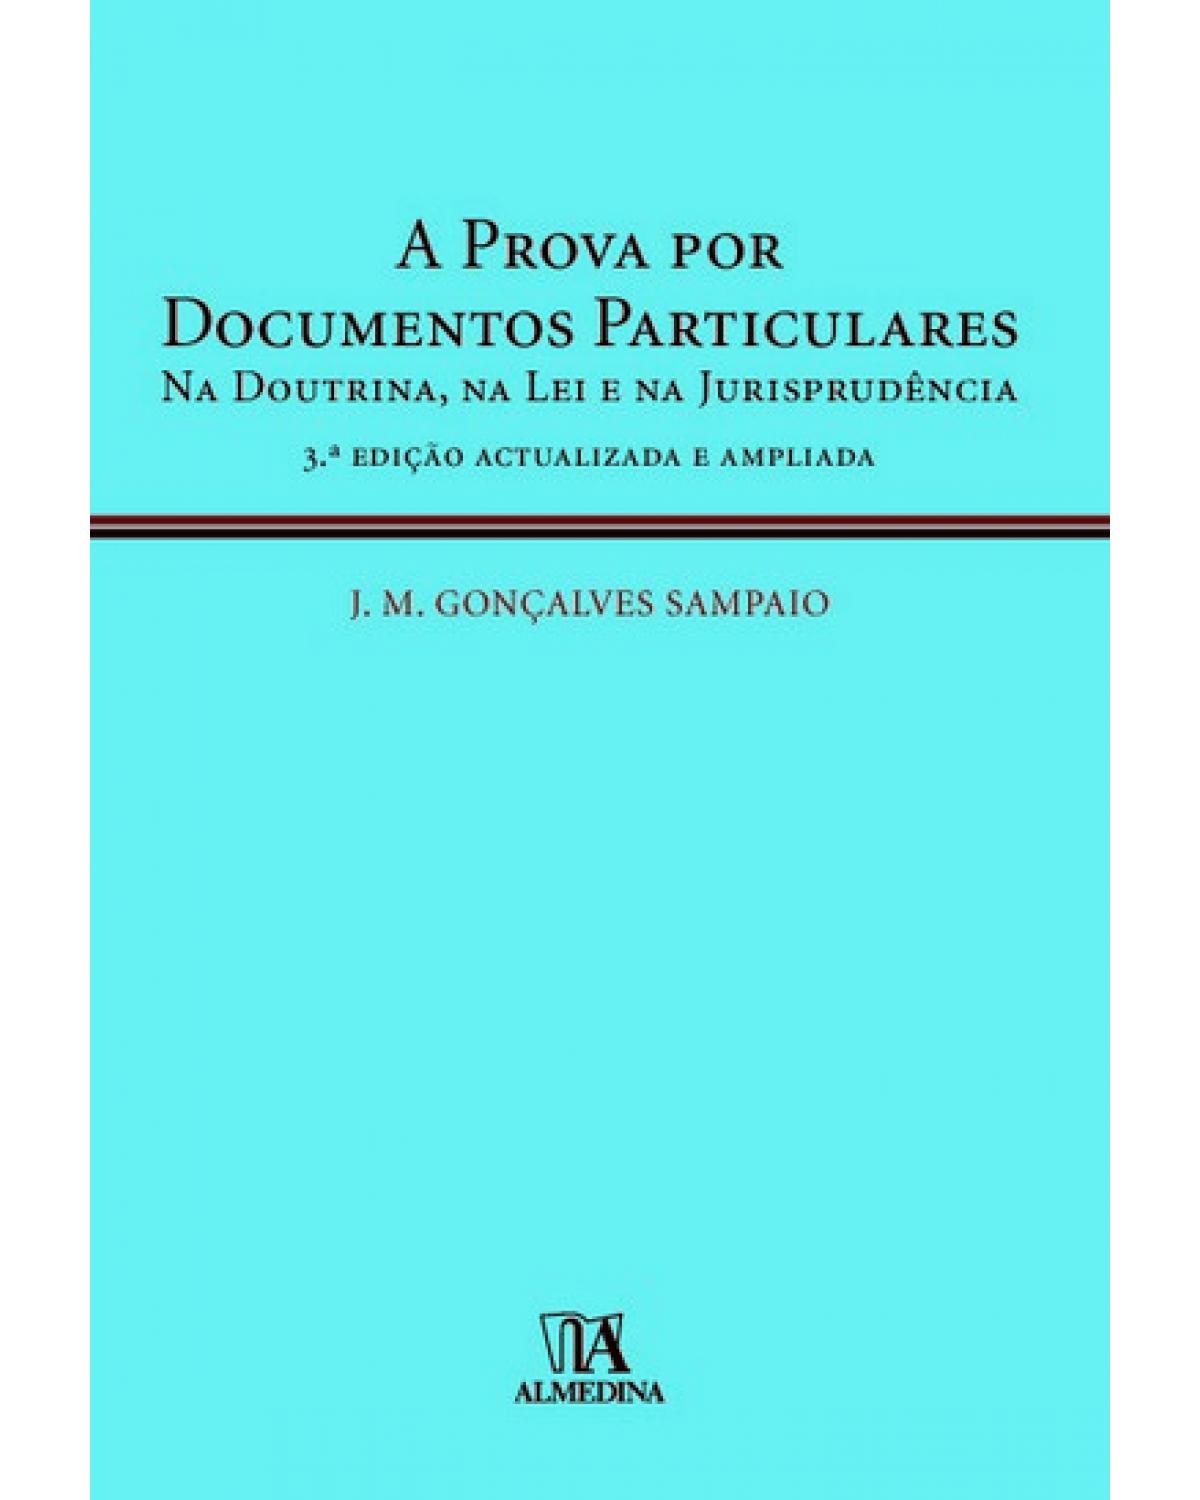 A prova por documentos particulares - Na doutrina, na lei e na jurisprudência - 3ª Edição | 2010